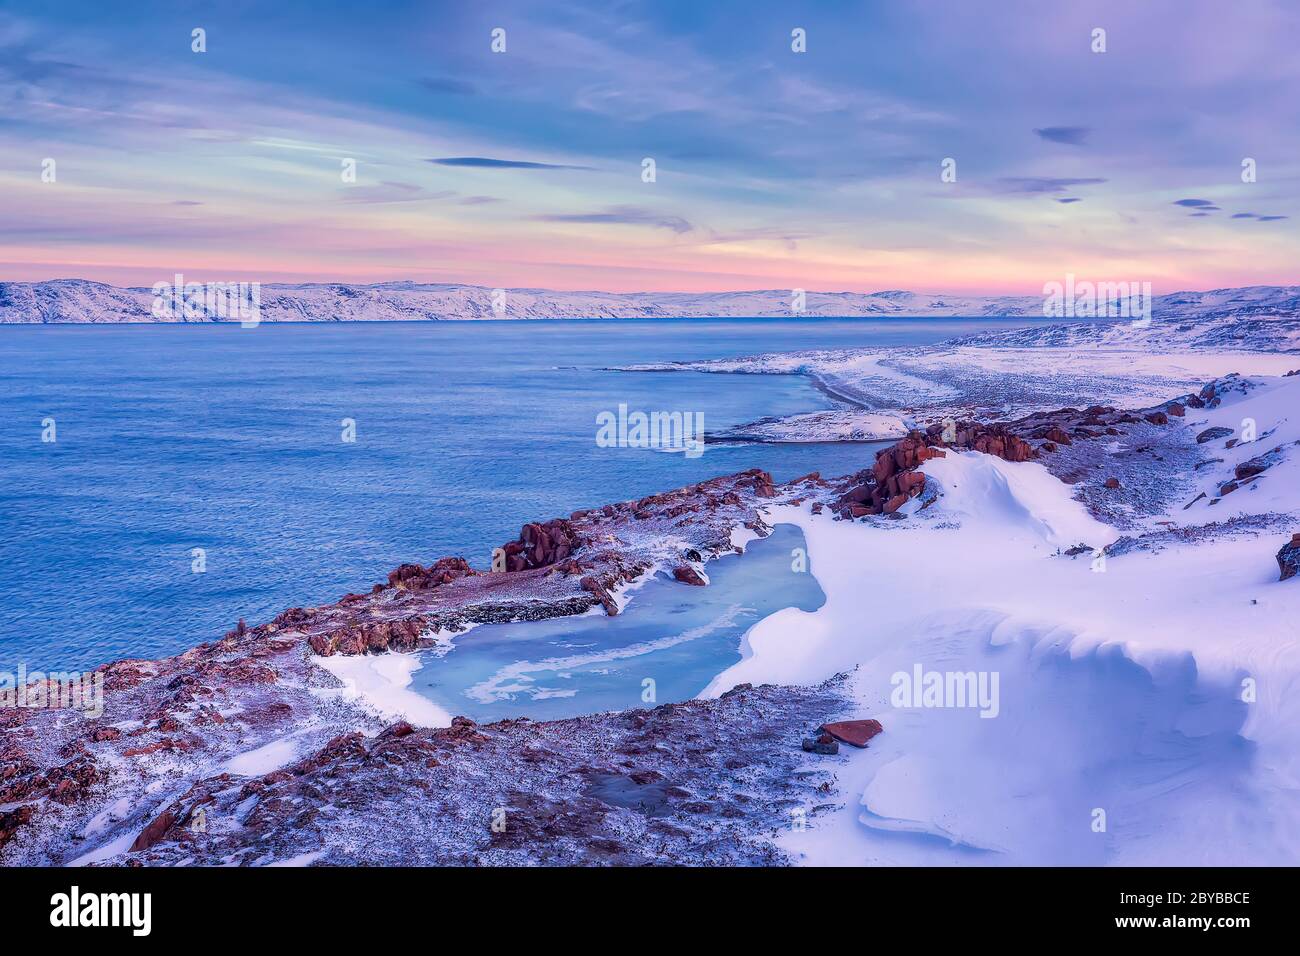 Un lac gelé et la côte de la mer de Barents en hiver au coucher du soleil. Teriberka, région de Mourmansk, péninsule de Kola. Russie Banque D'Images